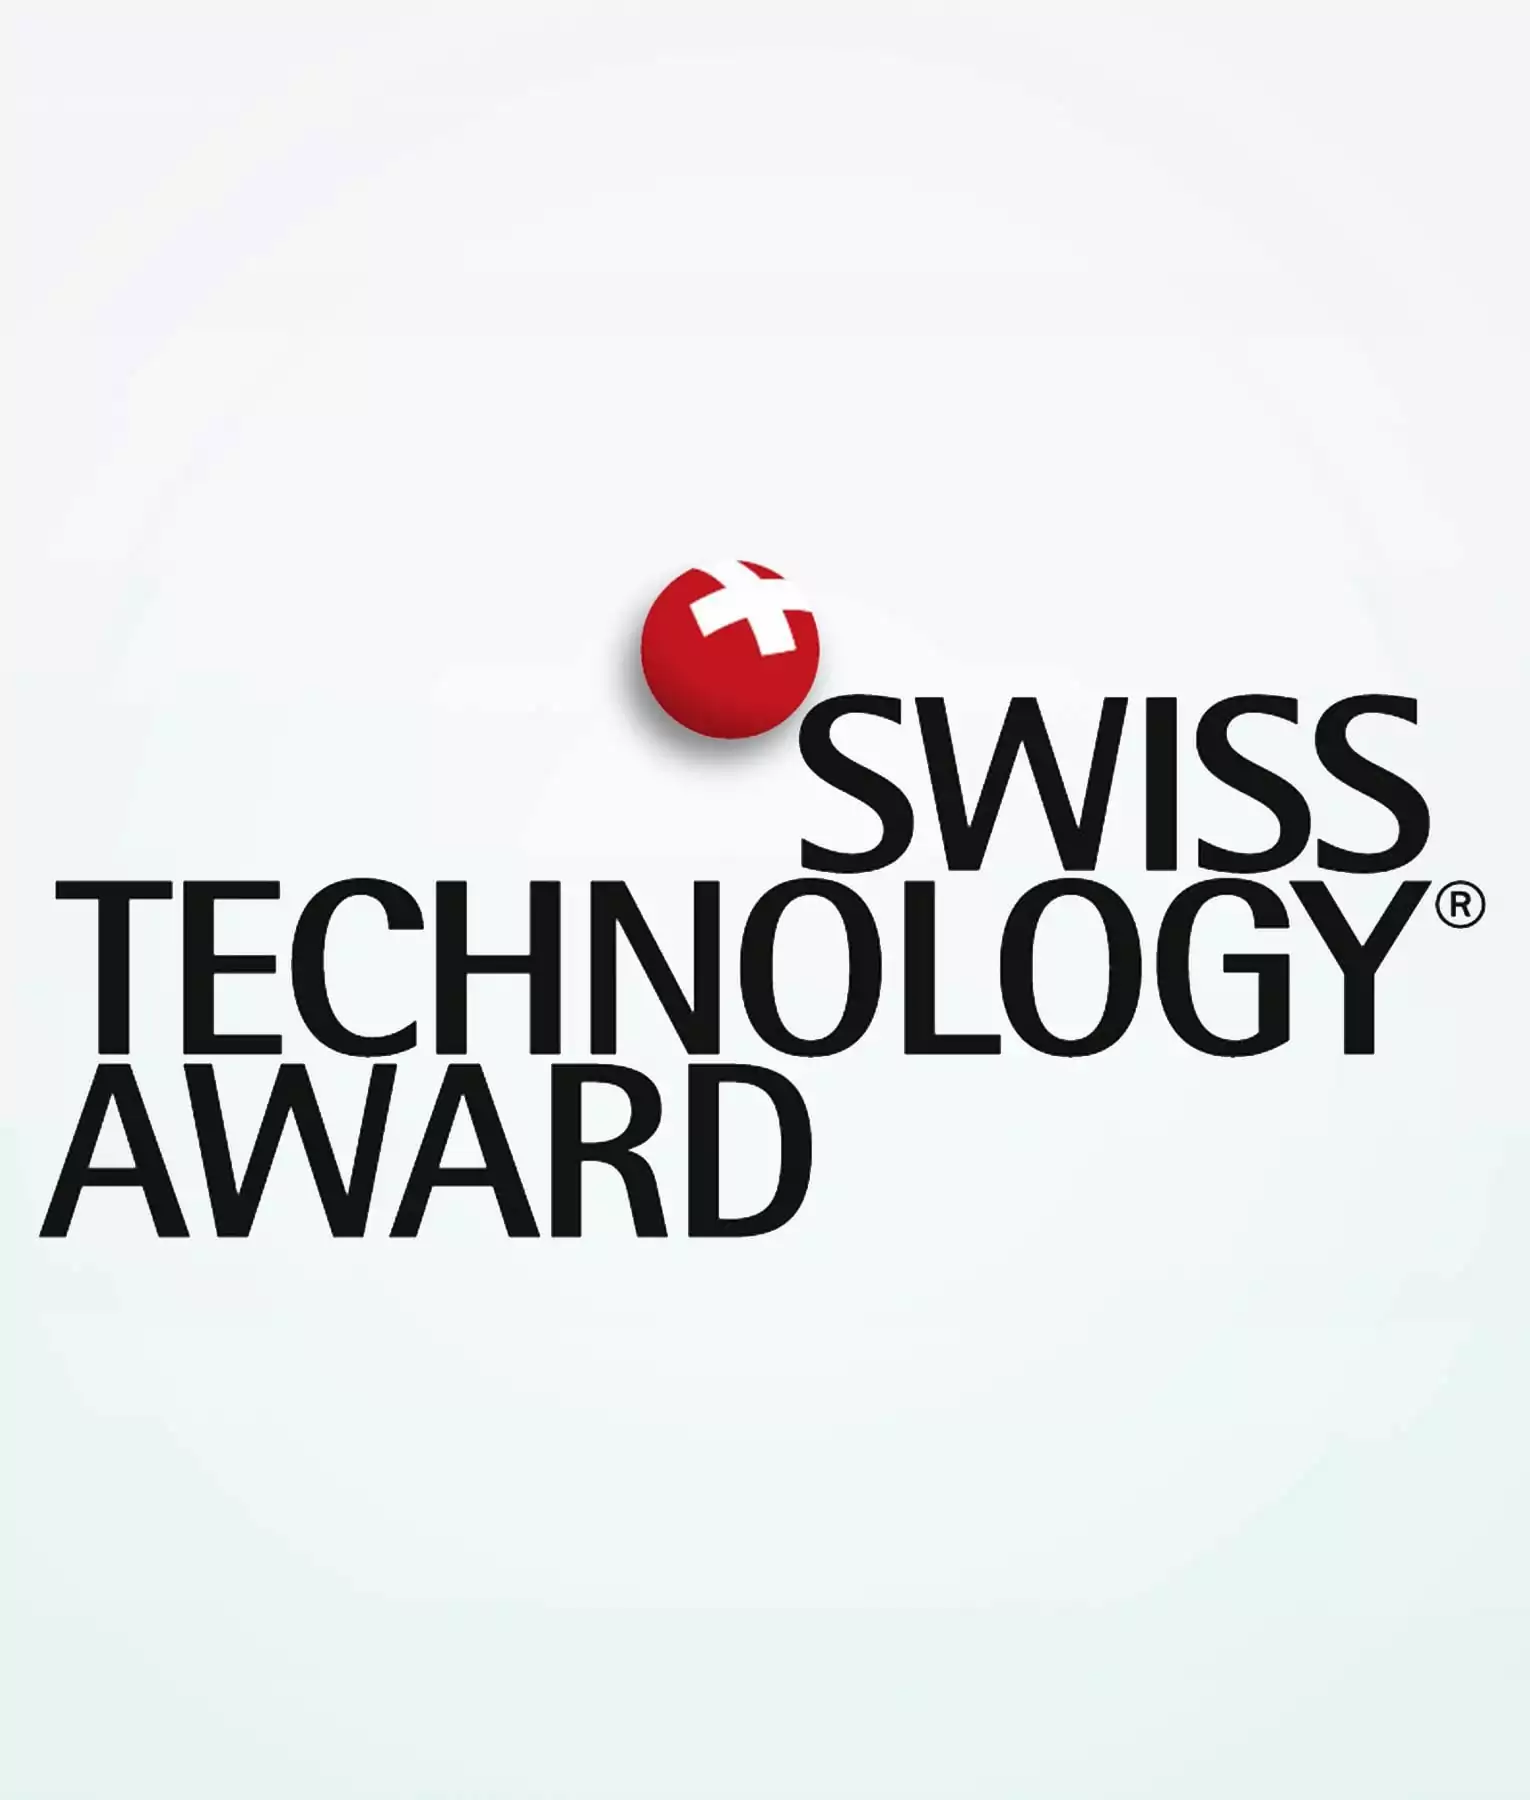 Premio de tecnología suiza 2